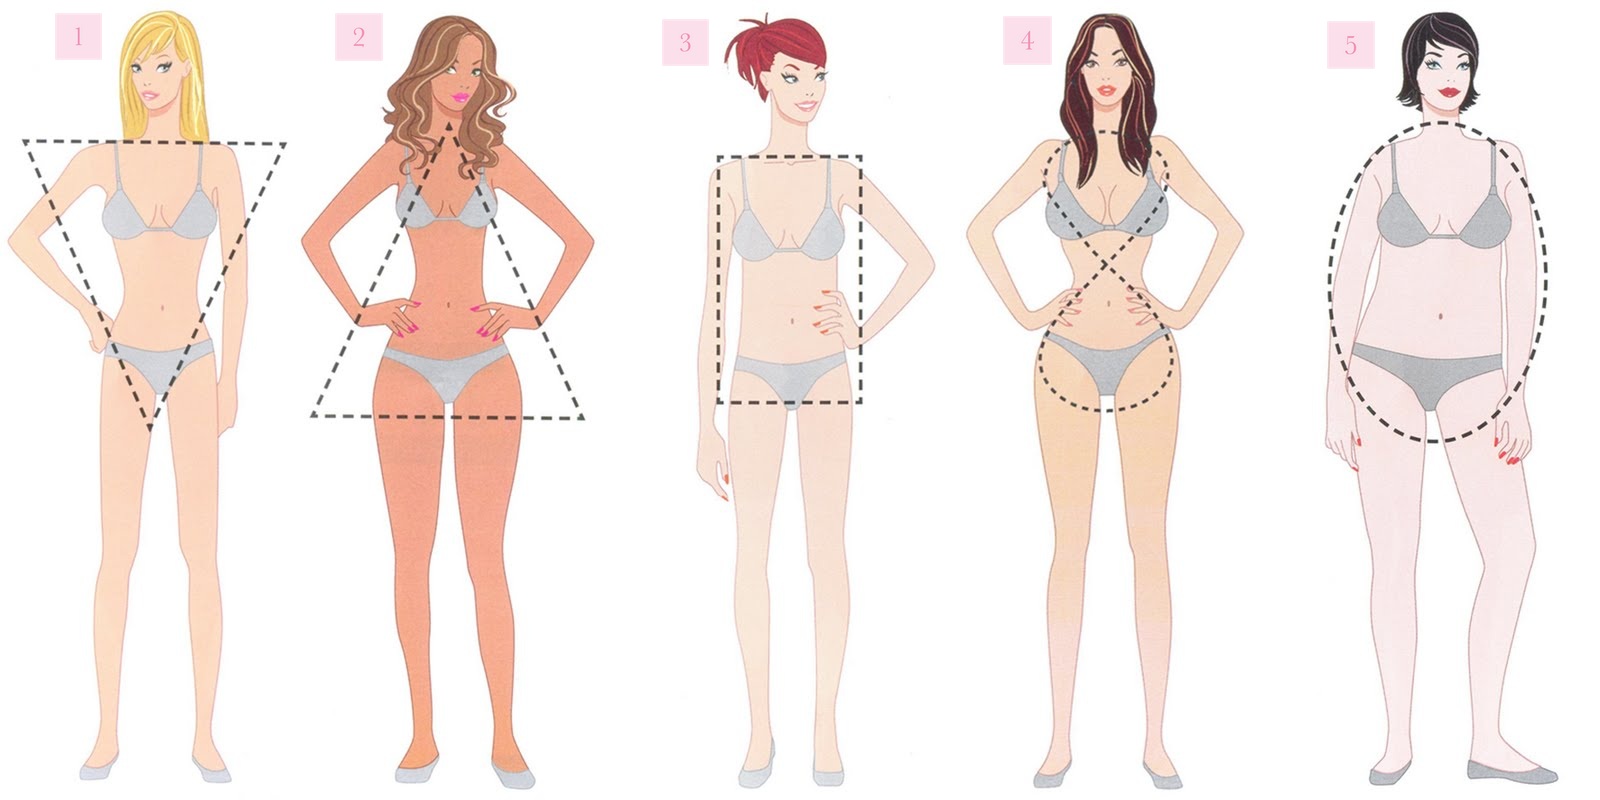 Os modelos certos para cada tipo de corpo